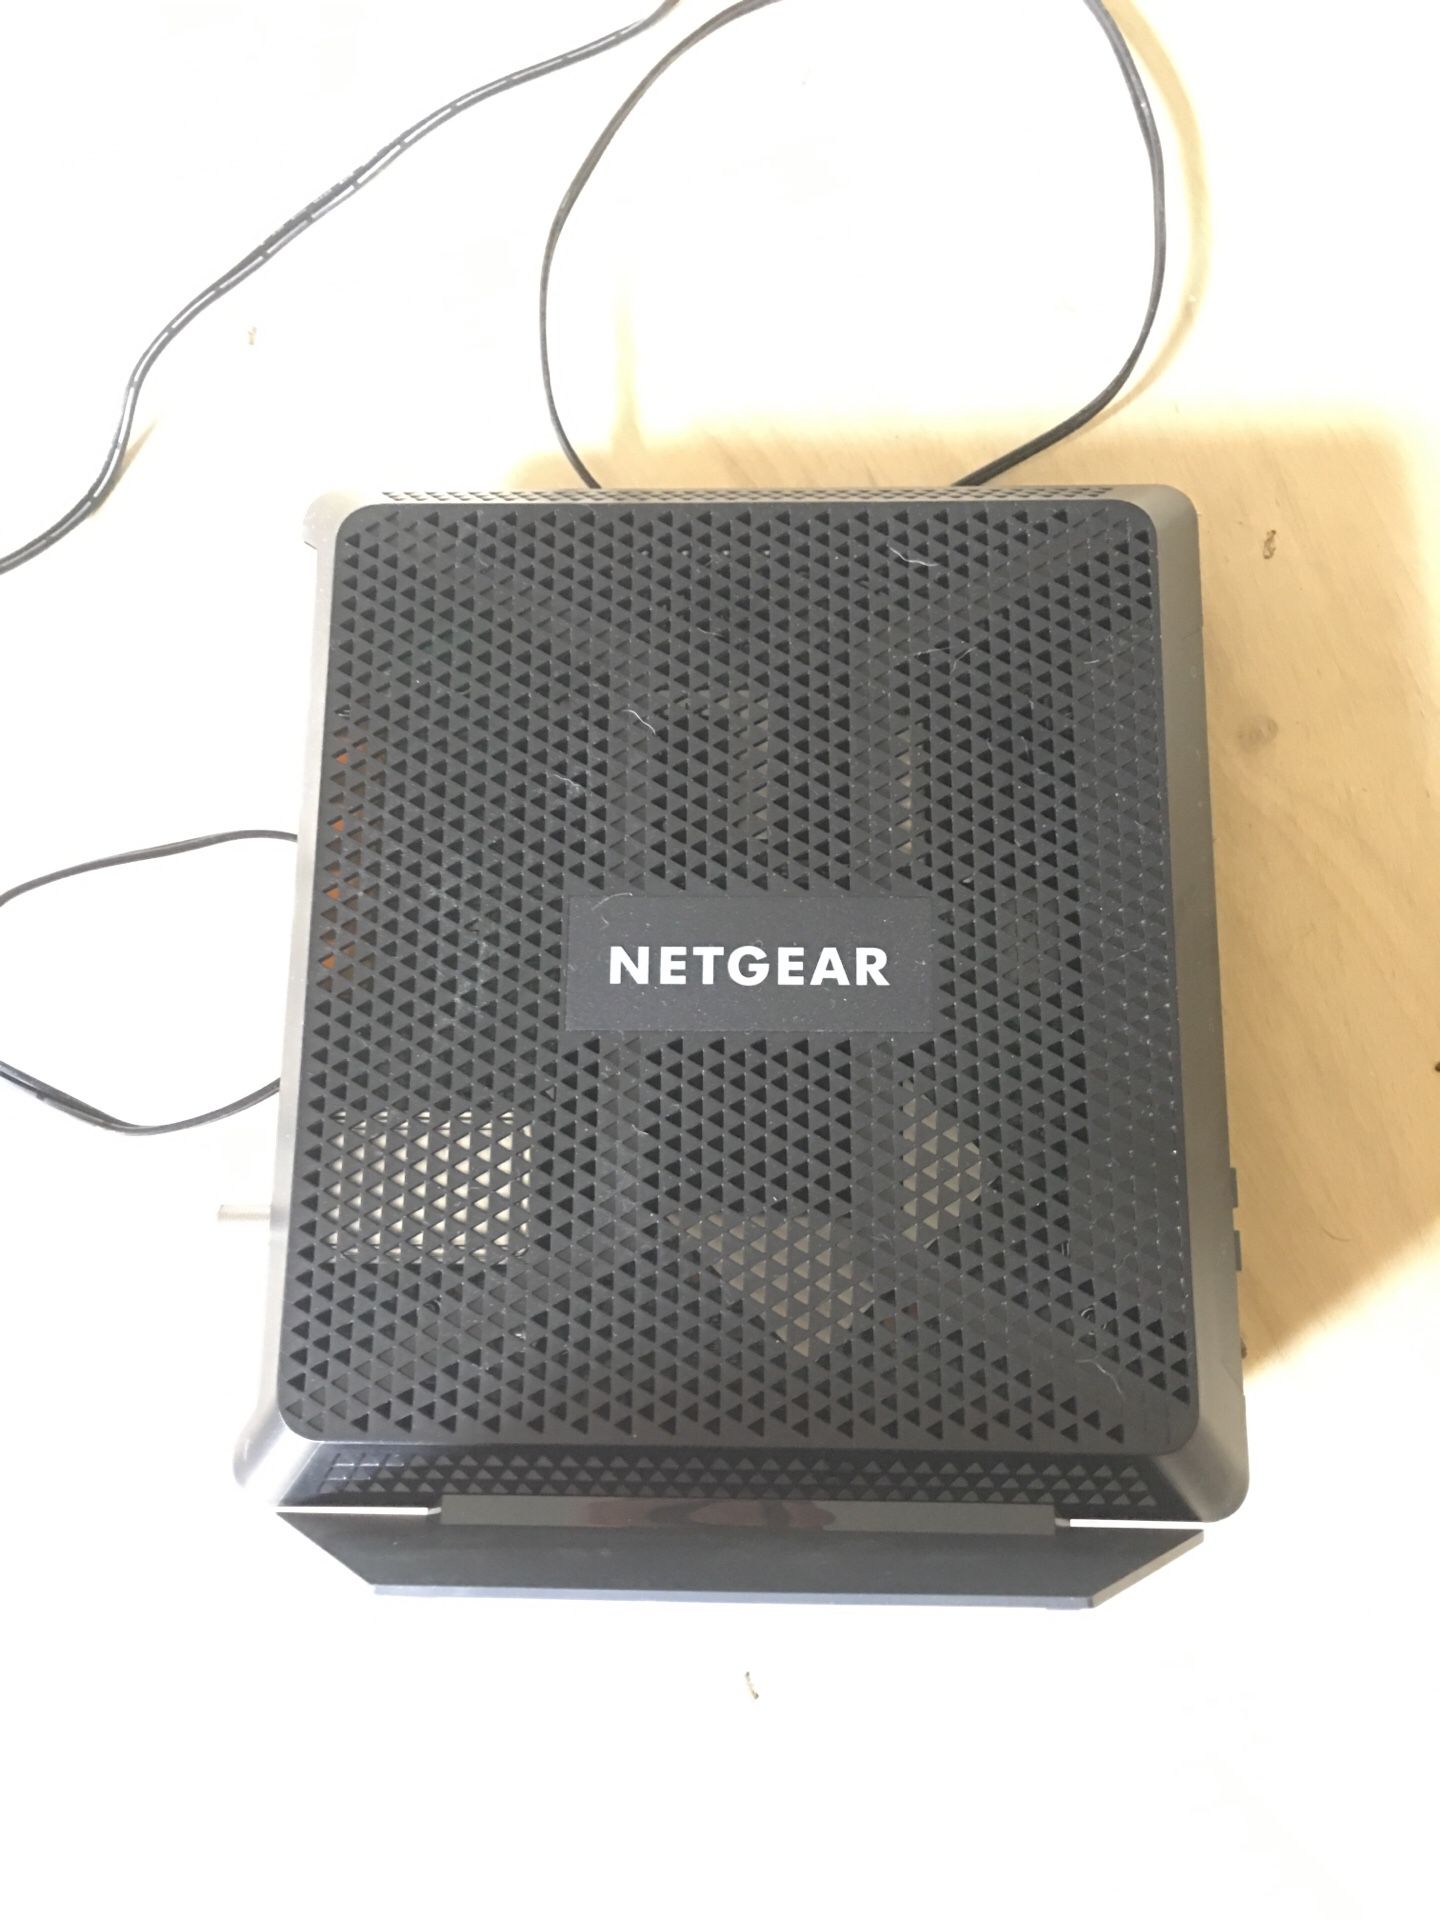 6 months old Netgear router modem c7000v2